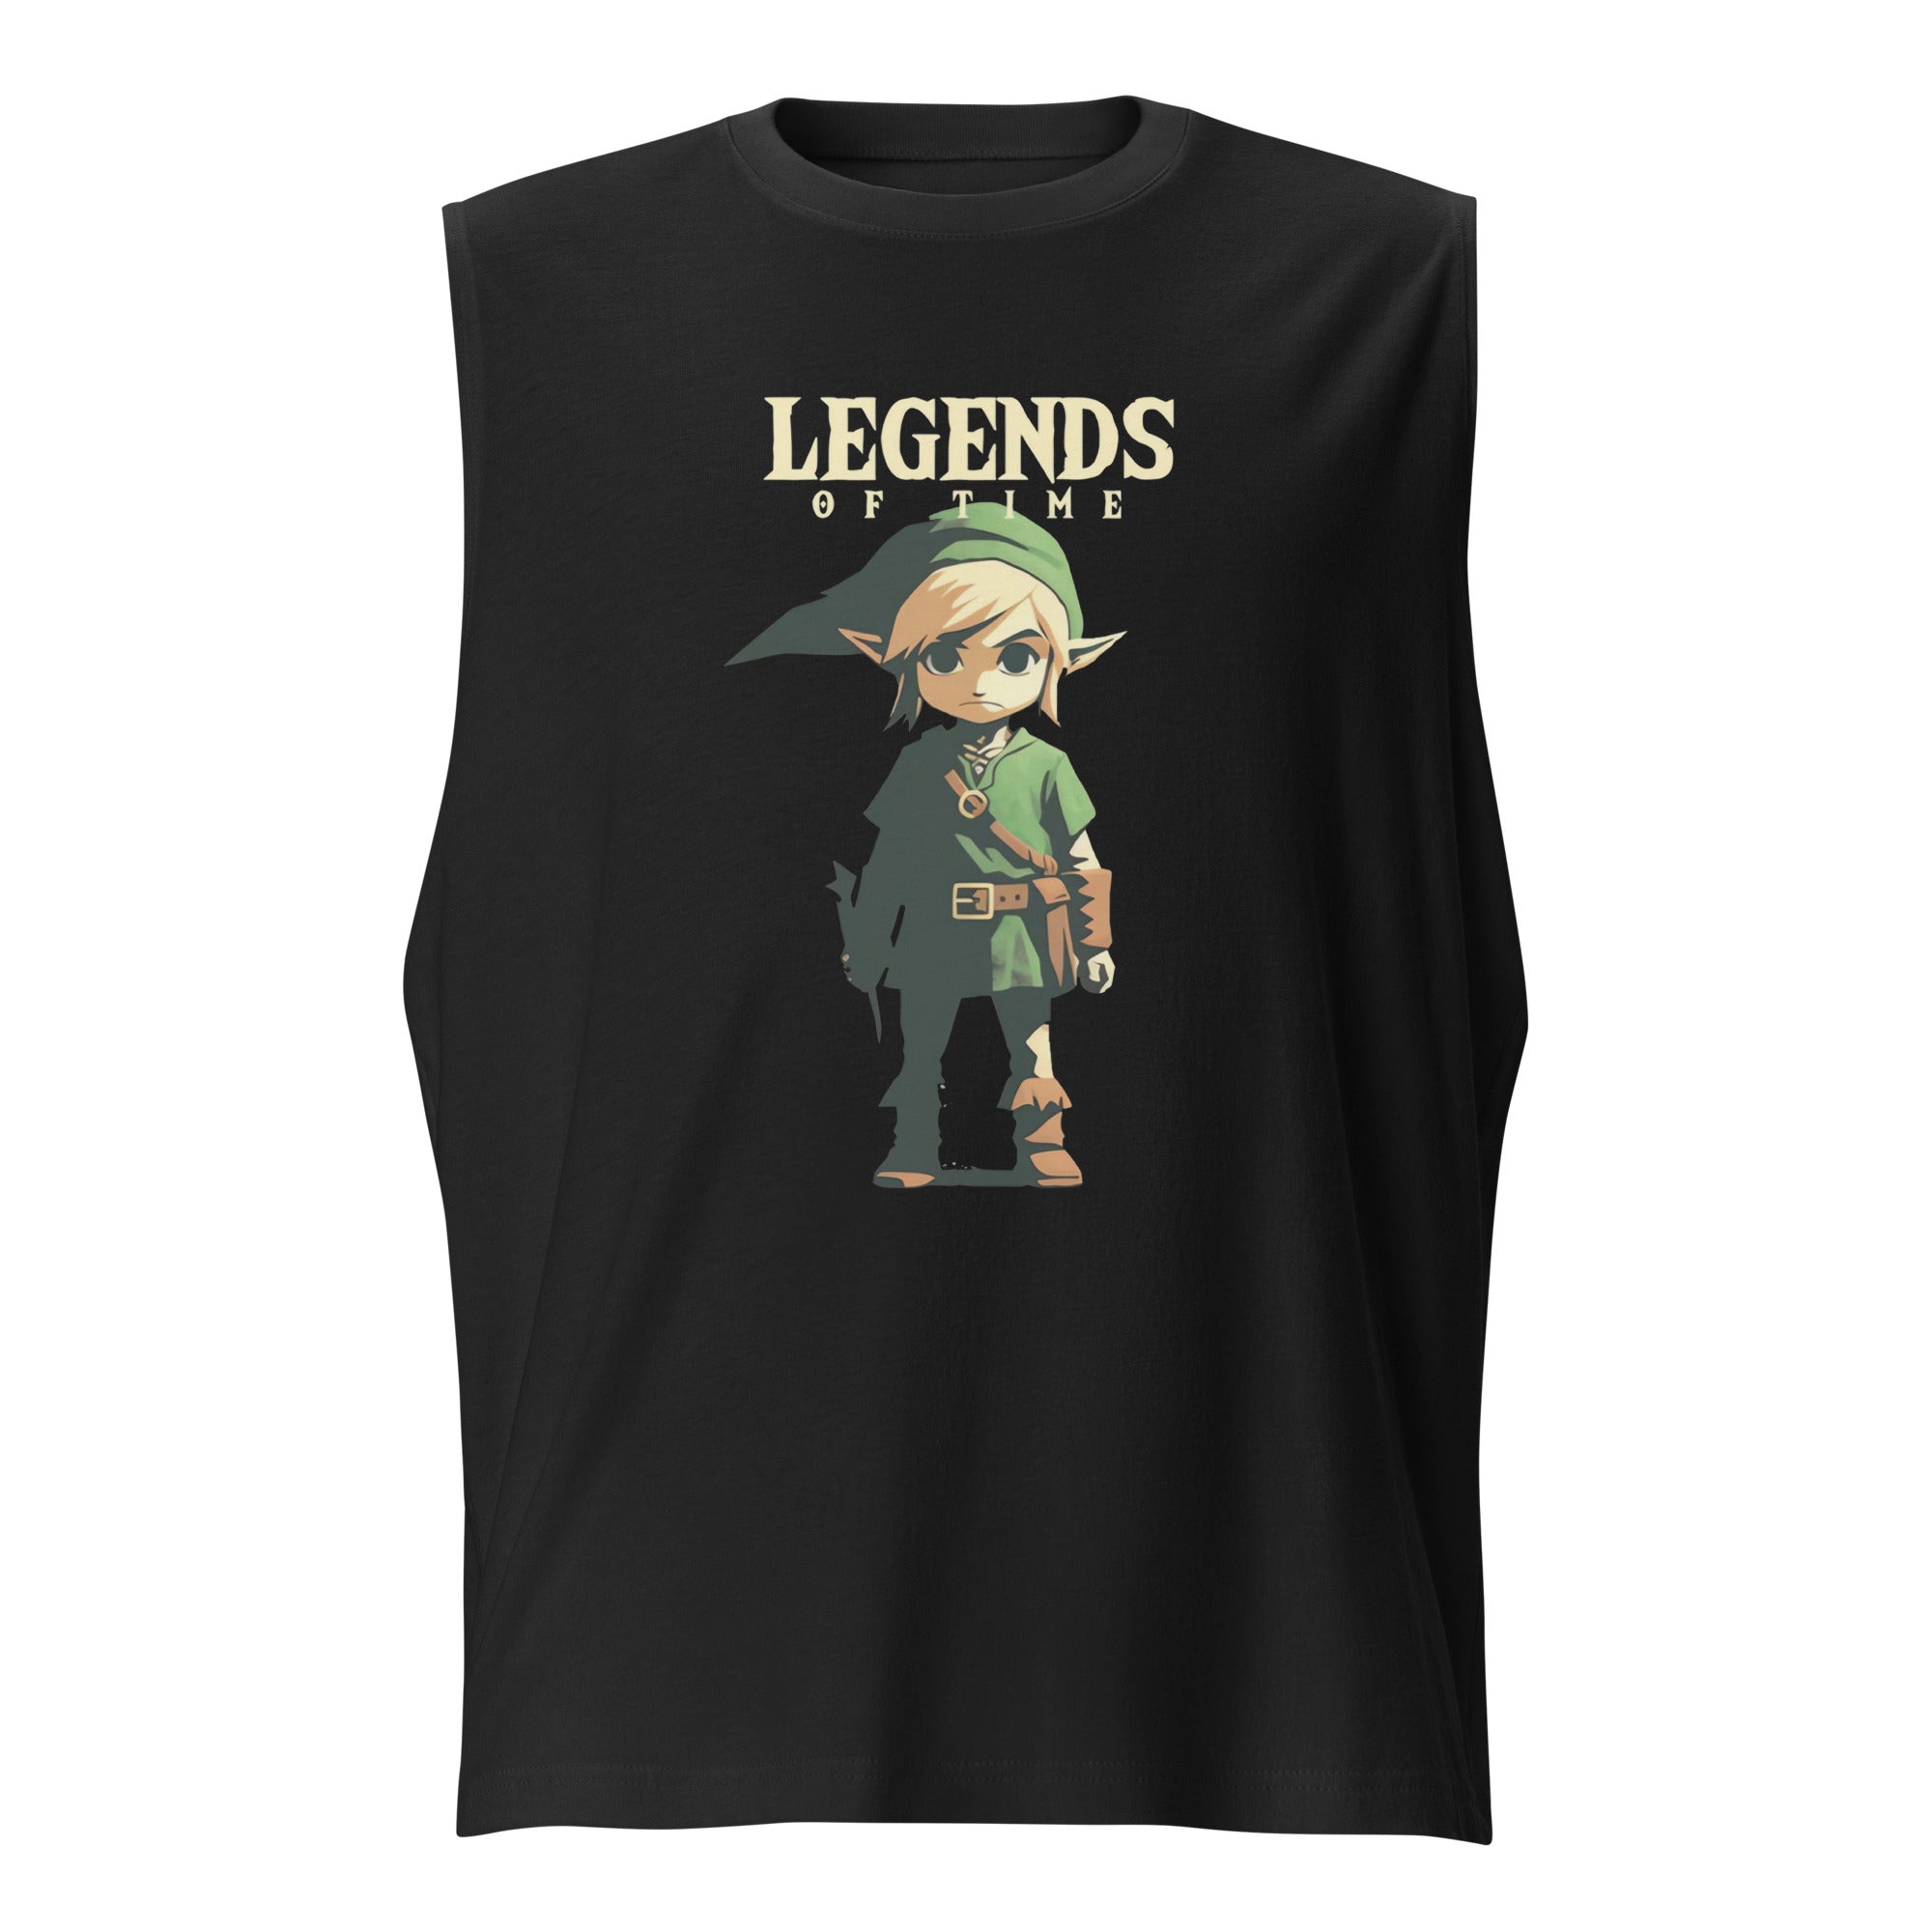 Camiseta sin Mangas Legends of Time, Nuestras Camisetas son unisex disponibles en la mejor tienda online, compra ahora en Superstar!